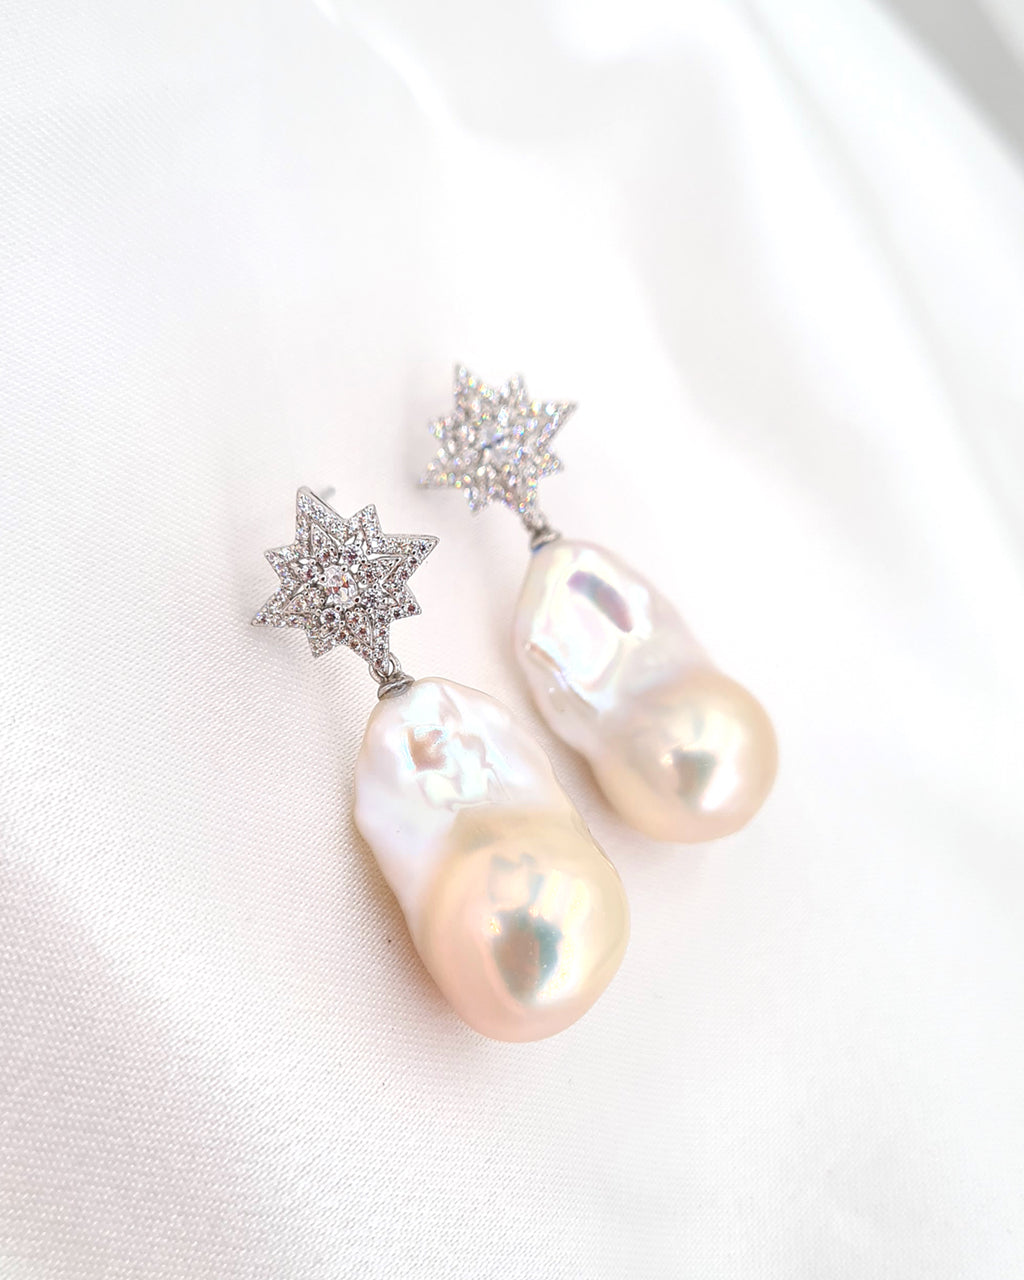 Large White Baroque Pearl Earrings - Star burst Earrings